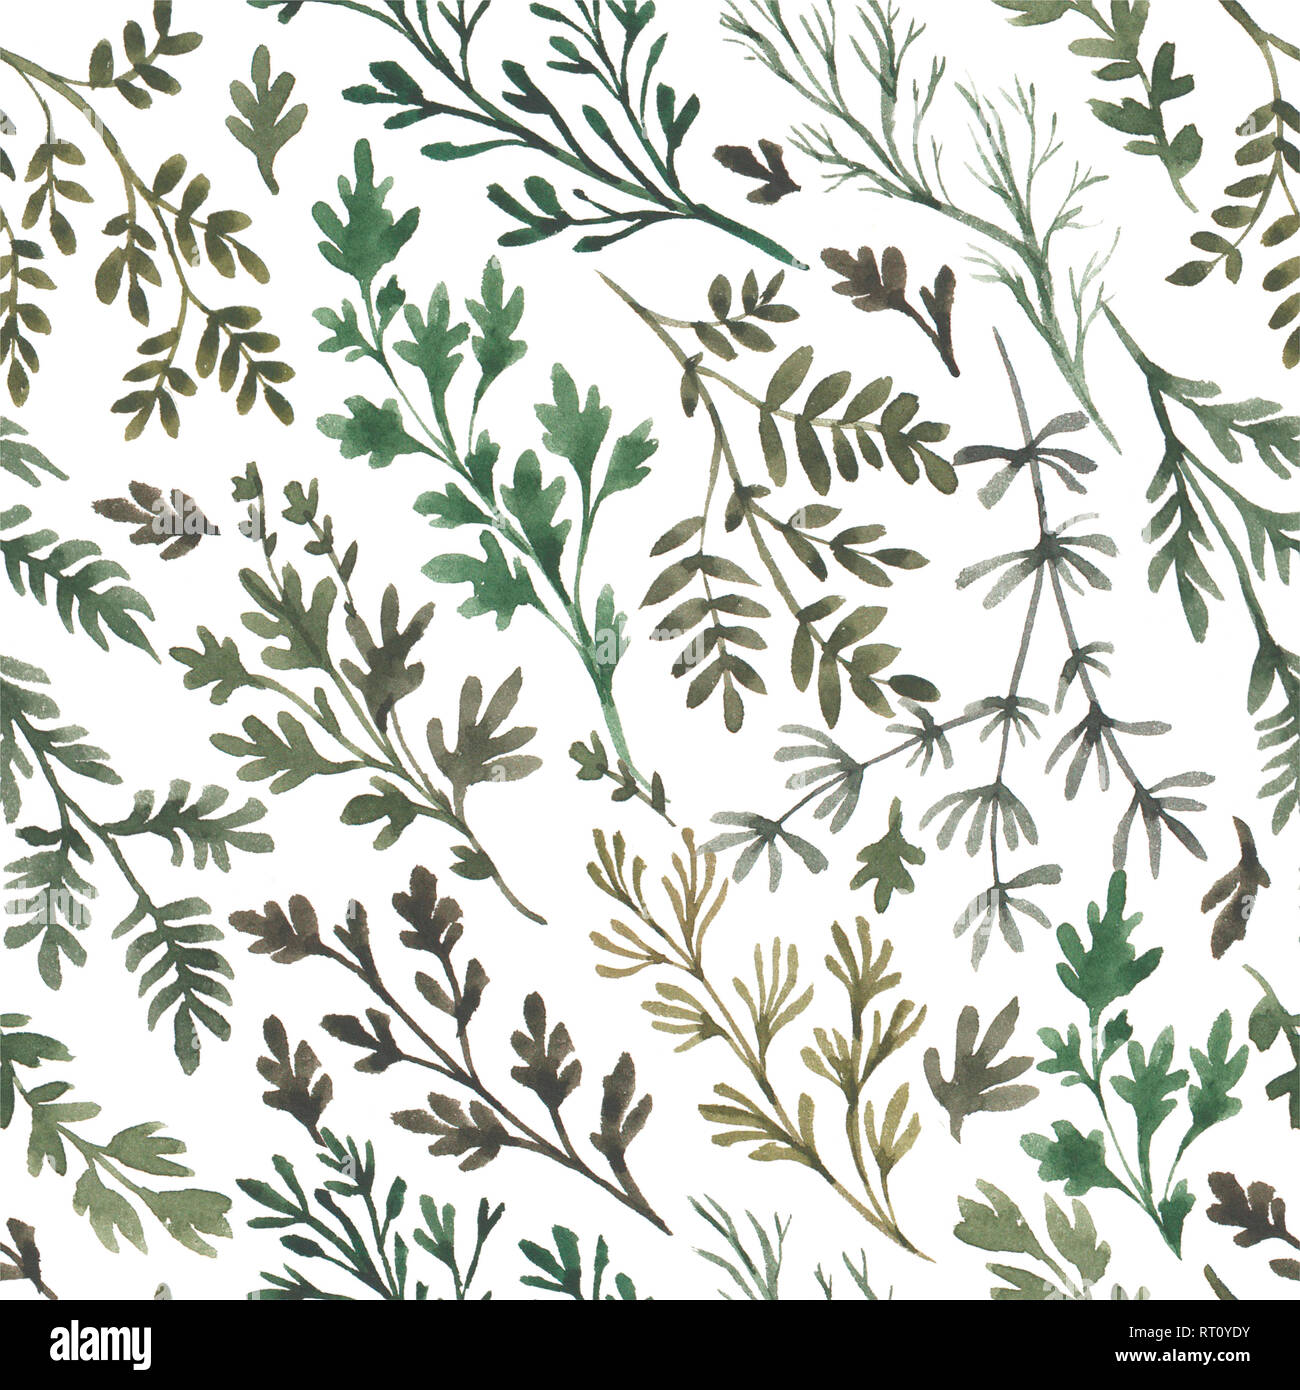 La nature organique à base d'Aquarelle illustration floral seamless pattern Banque D'Images